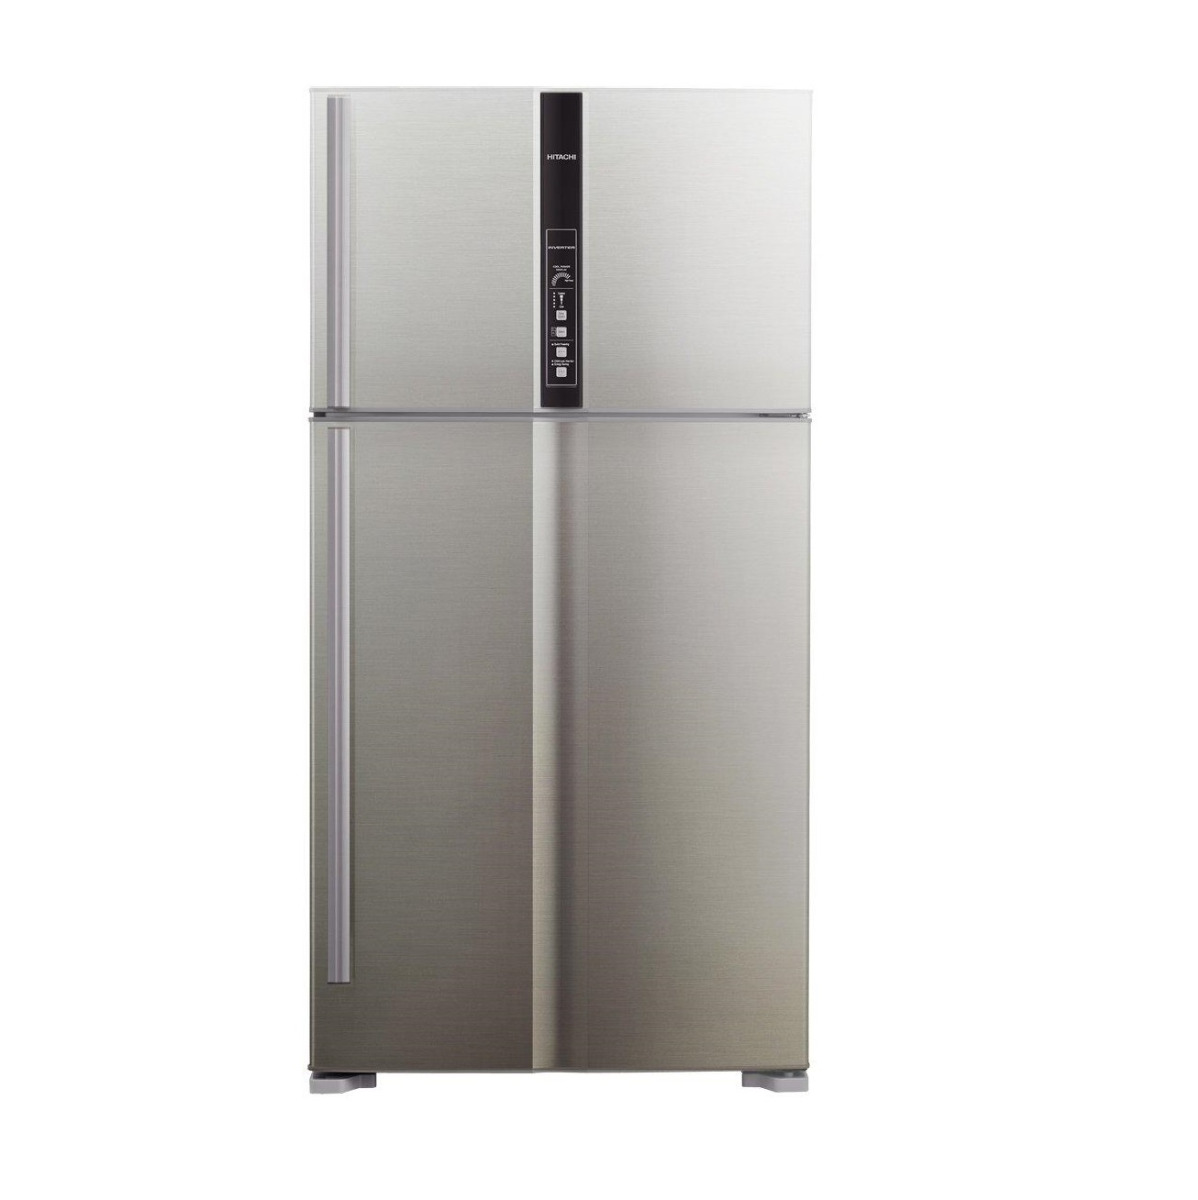 Hitachi Refrigerator 2 Door 21.2 Cu.ft, 600 Ltr, Inverter, Silver Platinum - R-V805PS1KV BSL